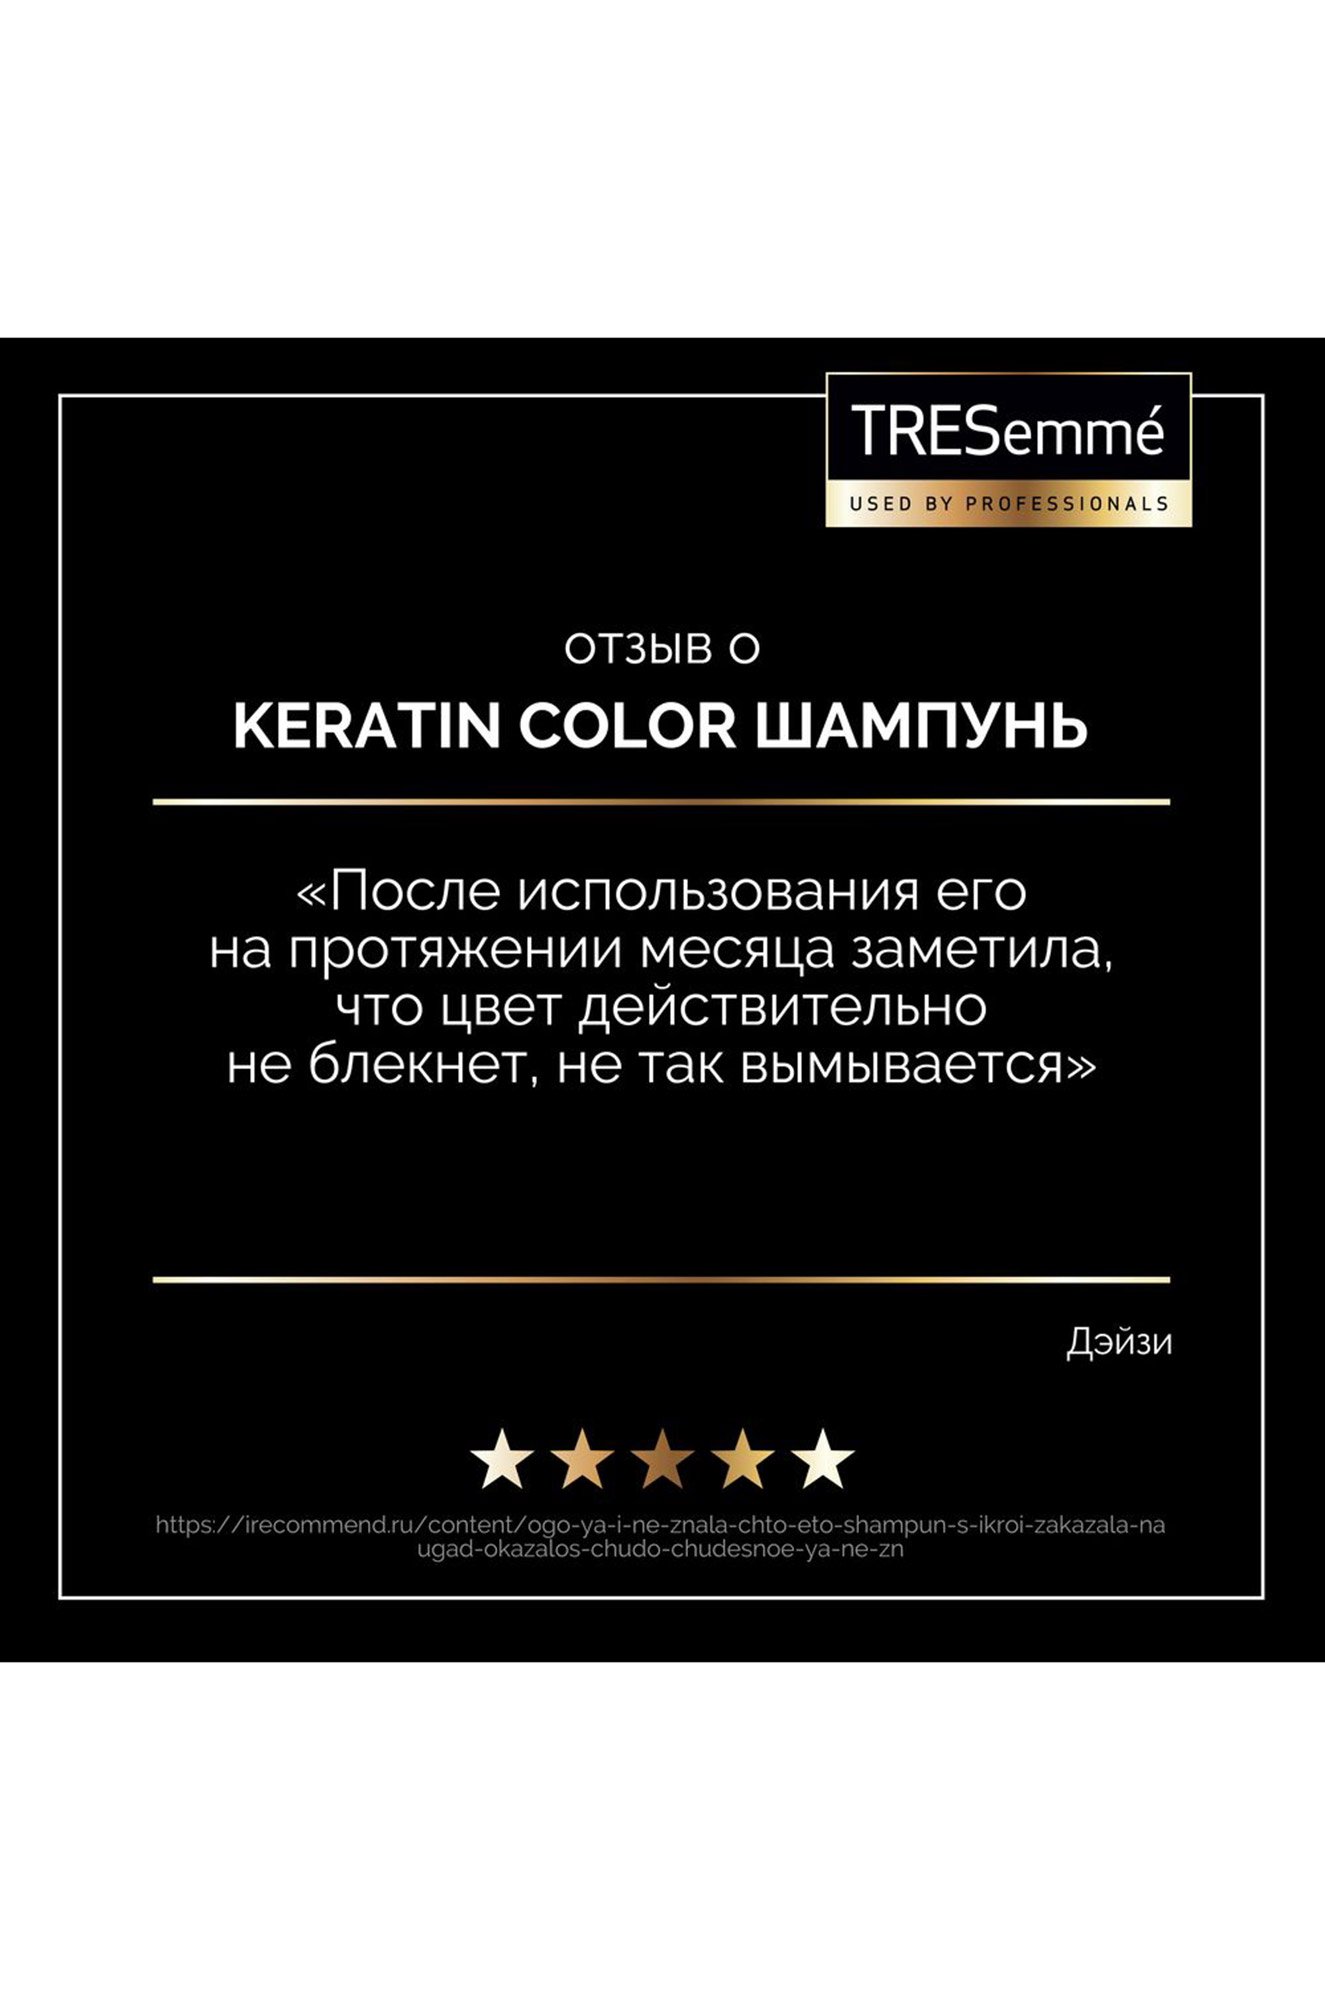 Шампунь для окрашенных волос Keratin Color 230 мл TRESemme